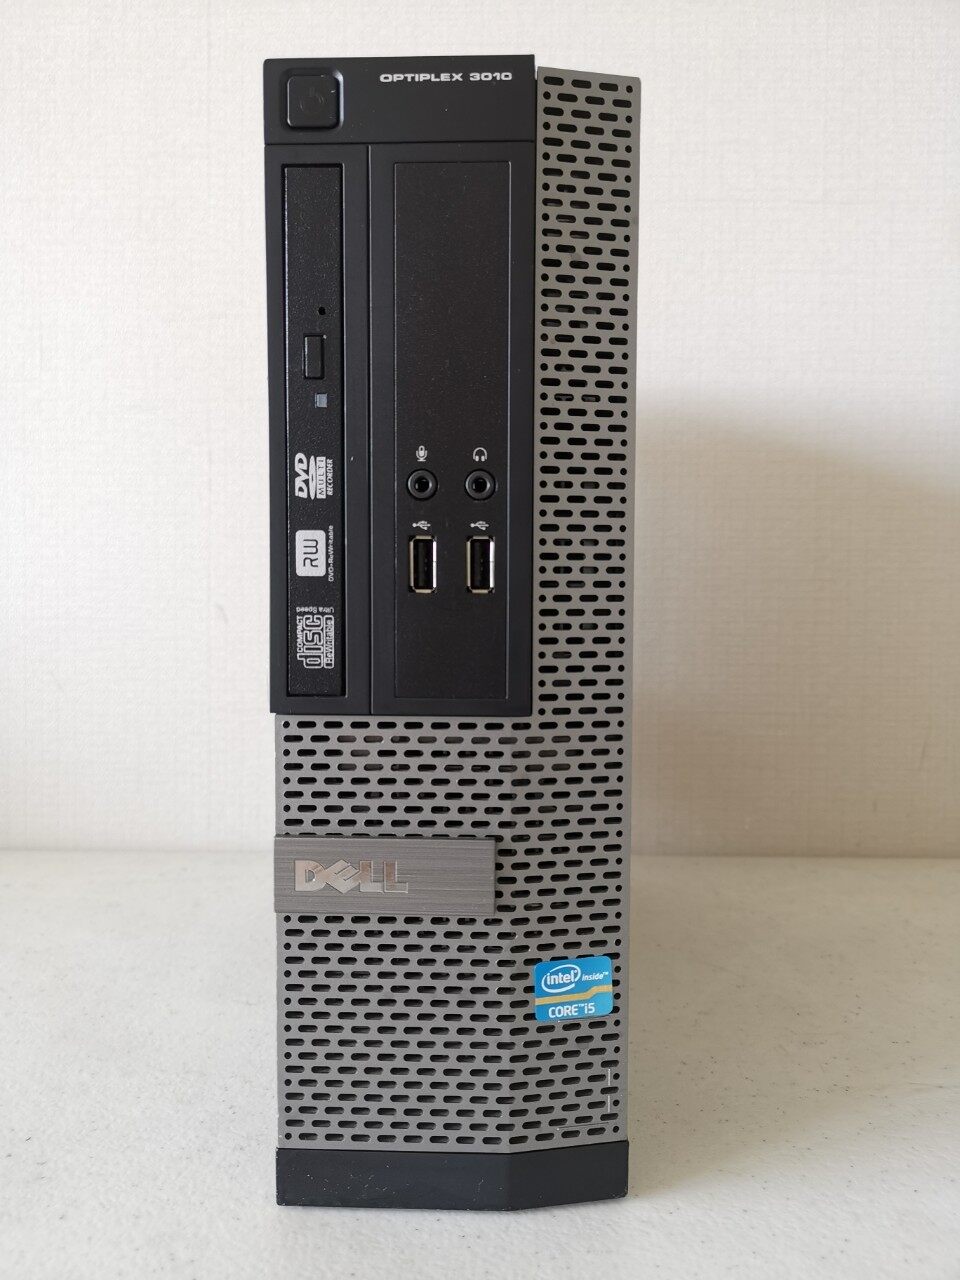 ข้อมูลเพิ่มเติมของ คอมพิวเตอร์ Dell Optiplex 3010 SFF Core i5-3470 (เจน 3)  มี HDMI ต่อออกจอทีวีได้  ลงวินโดว์แท้และโปรแกรมพื้นฐานให้พร้อมใช้งาน